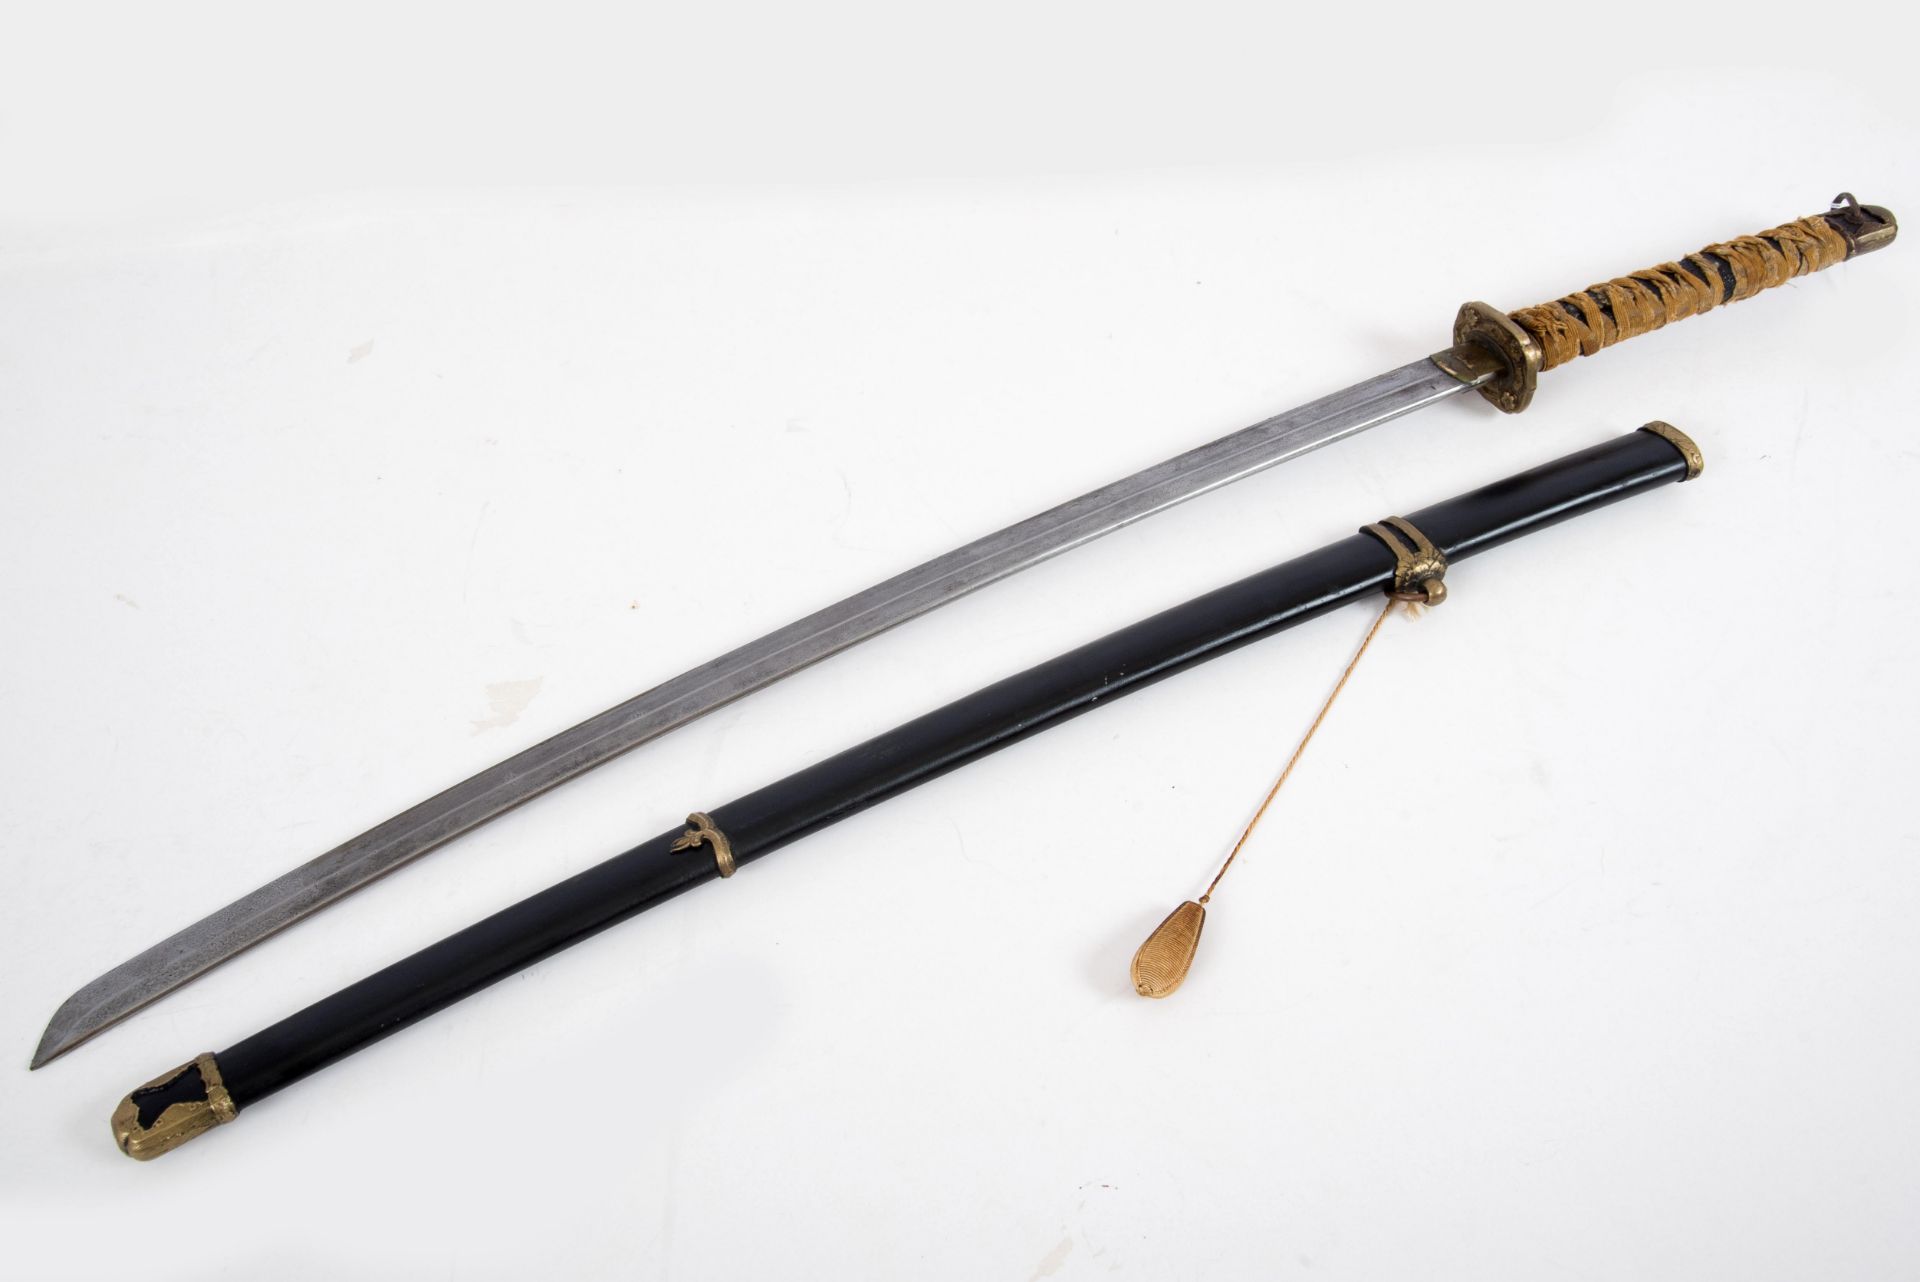 Samurai-Schwert (Katana) - Image 3 of 4